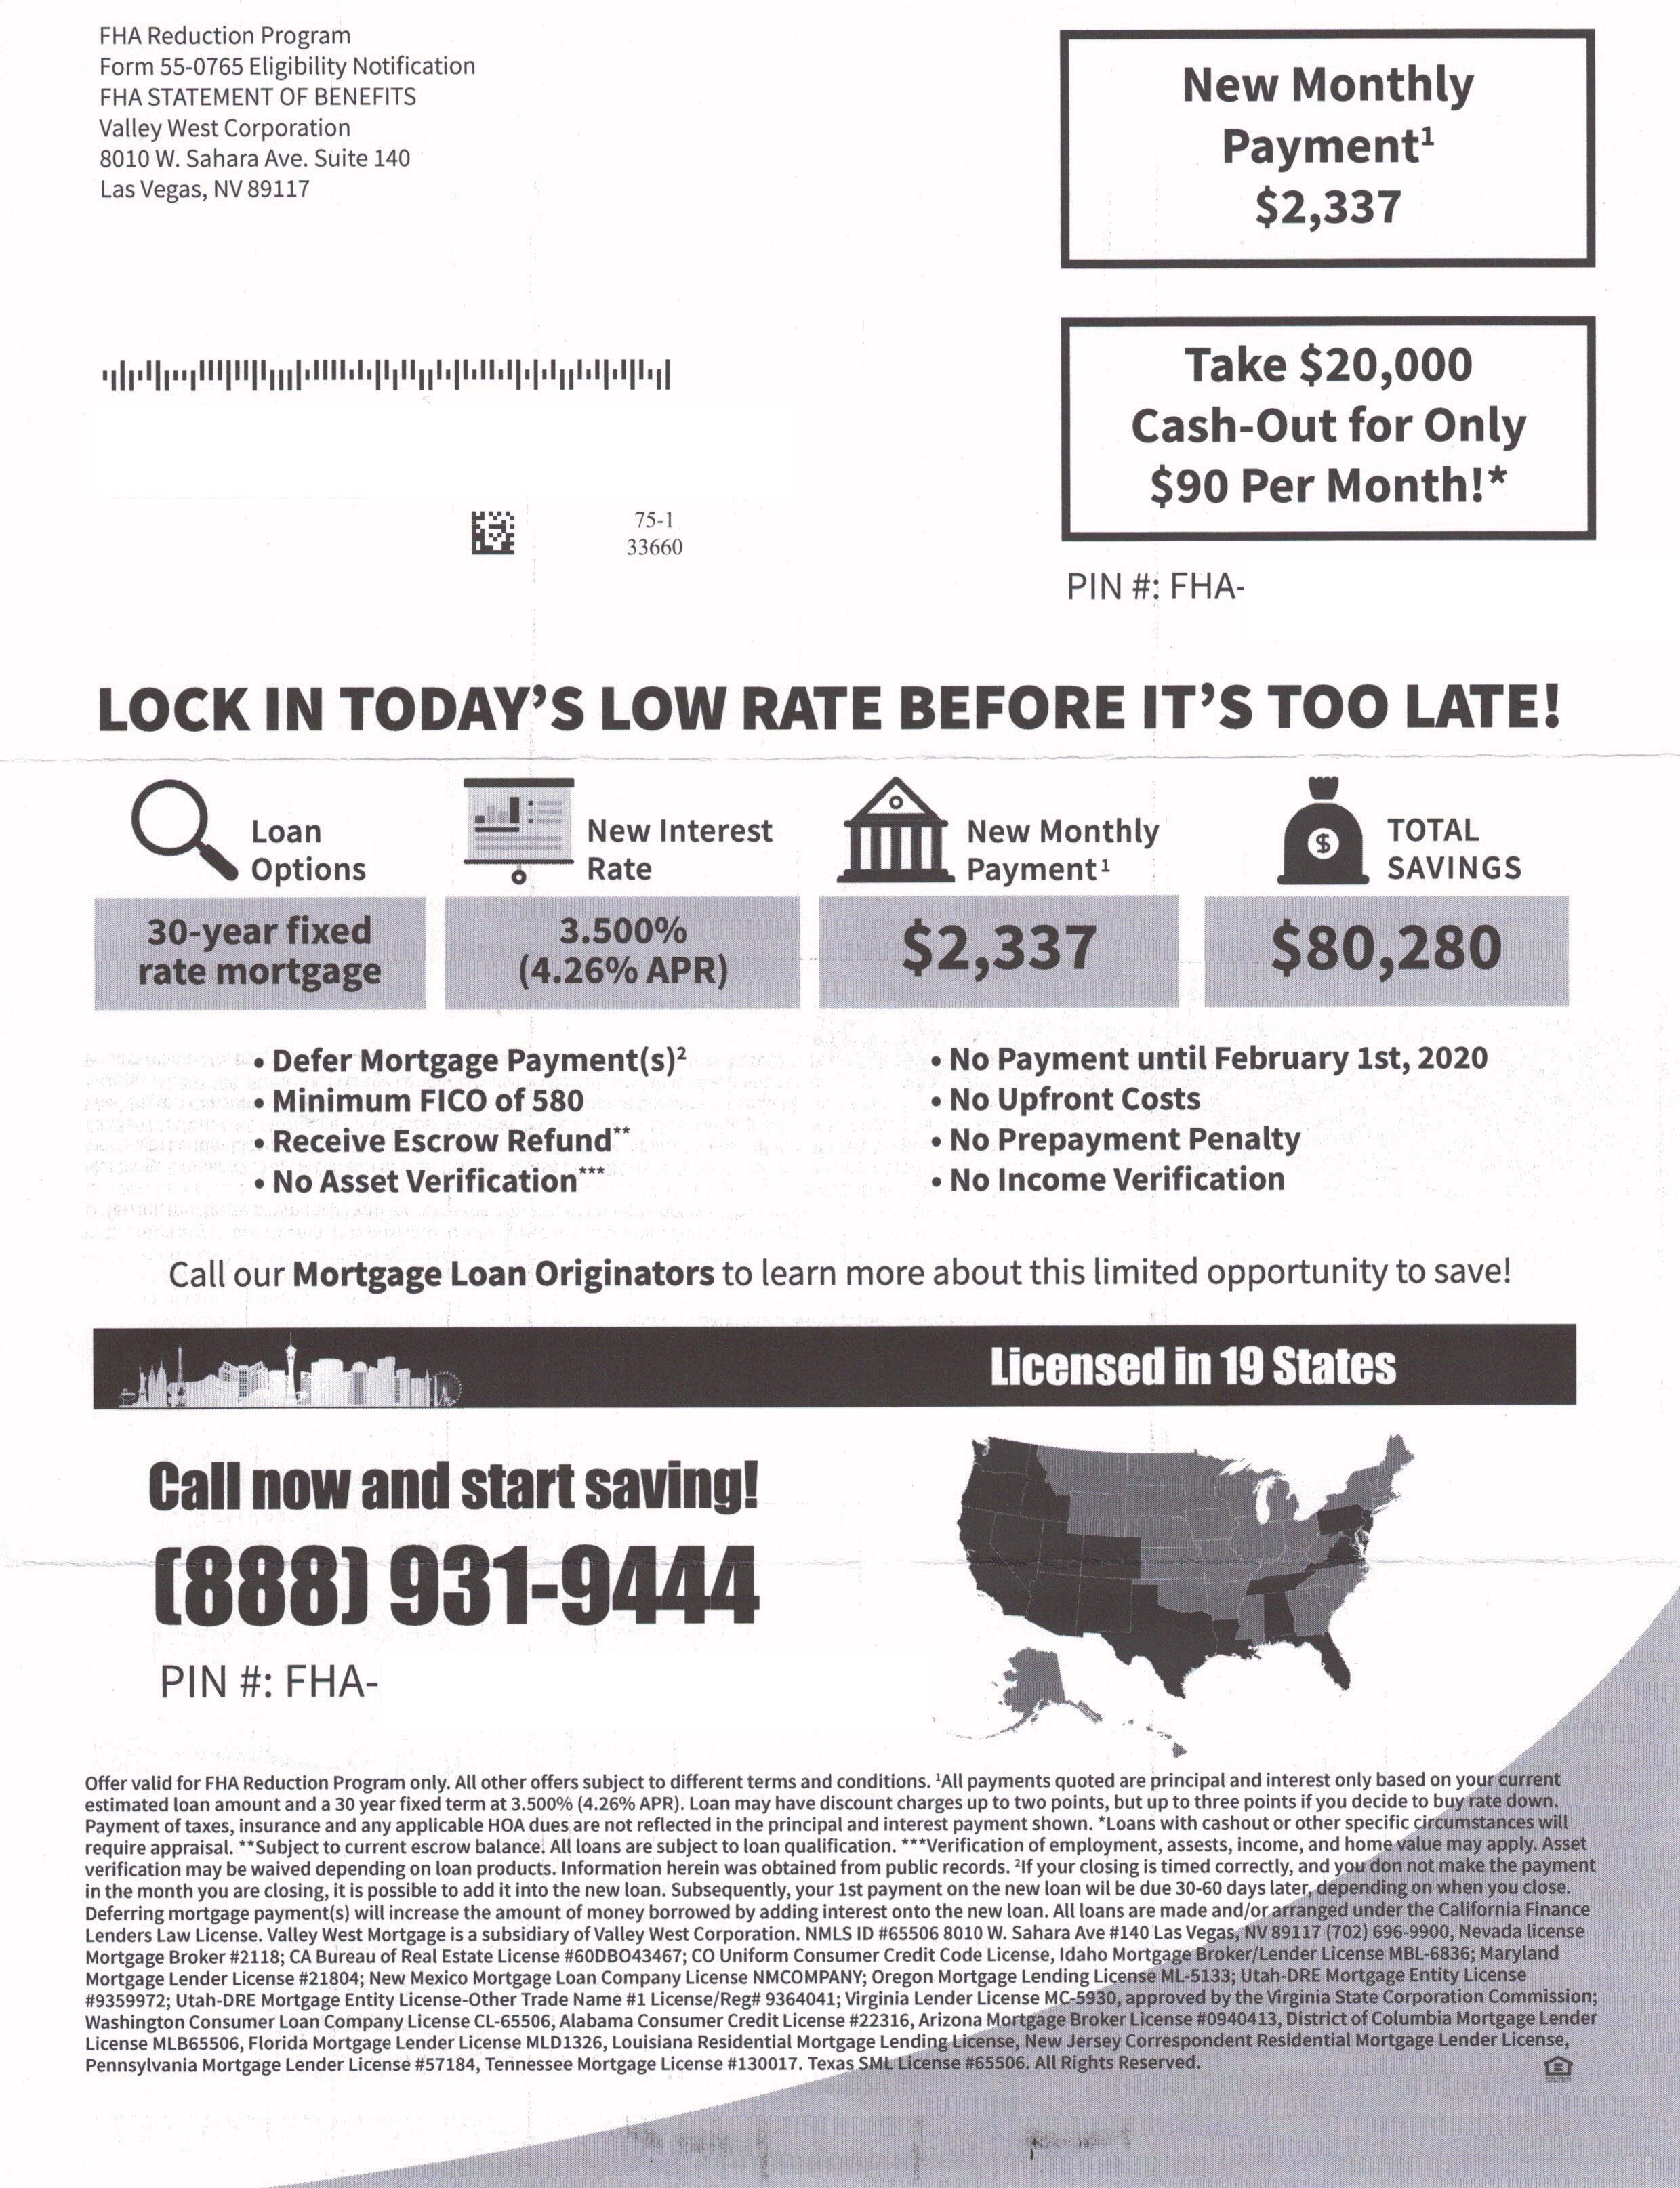 FHA Mortgage Letter Samples.jpg